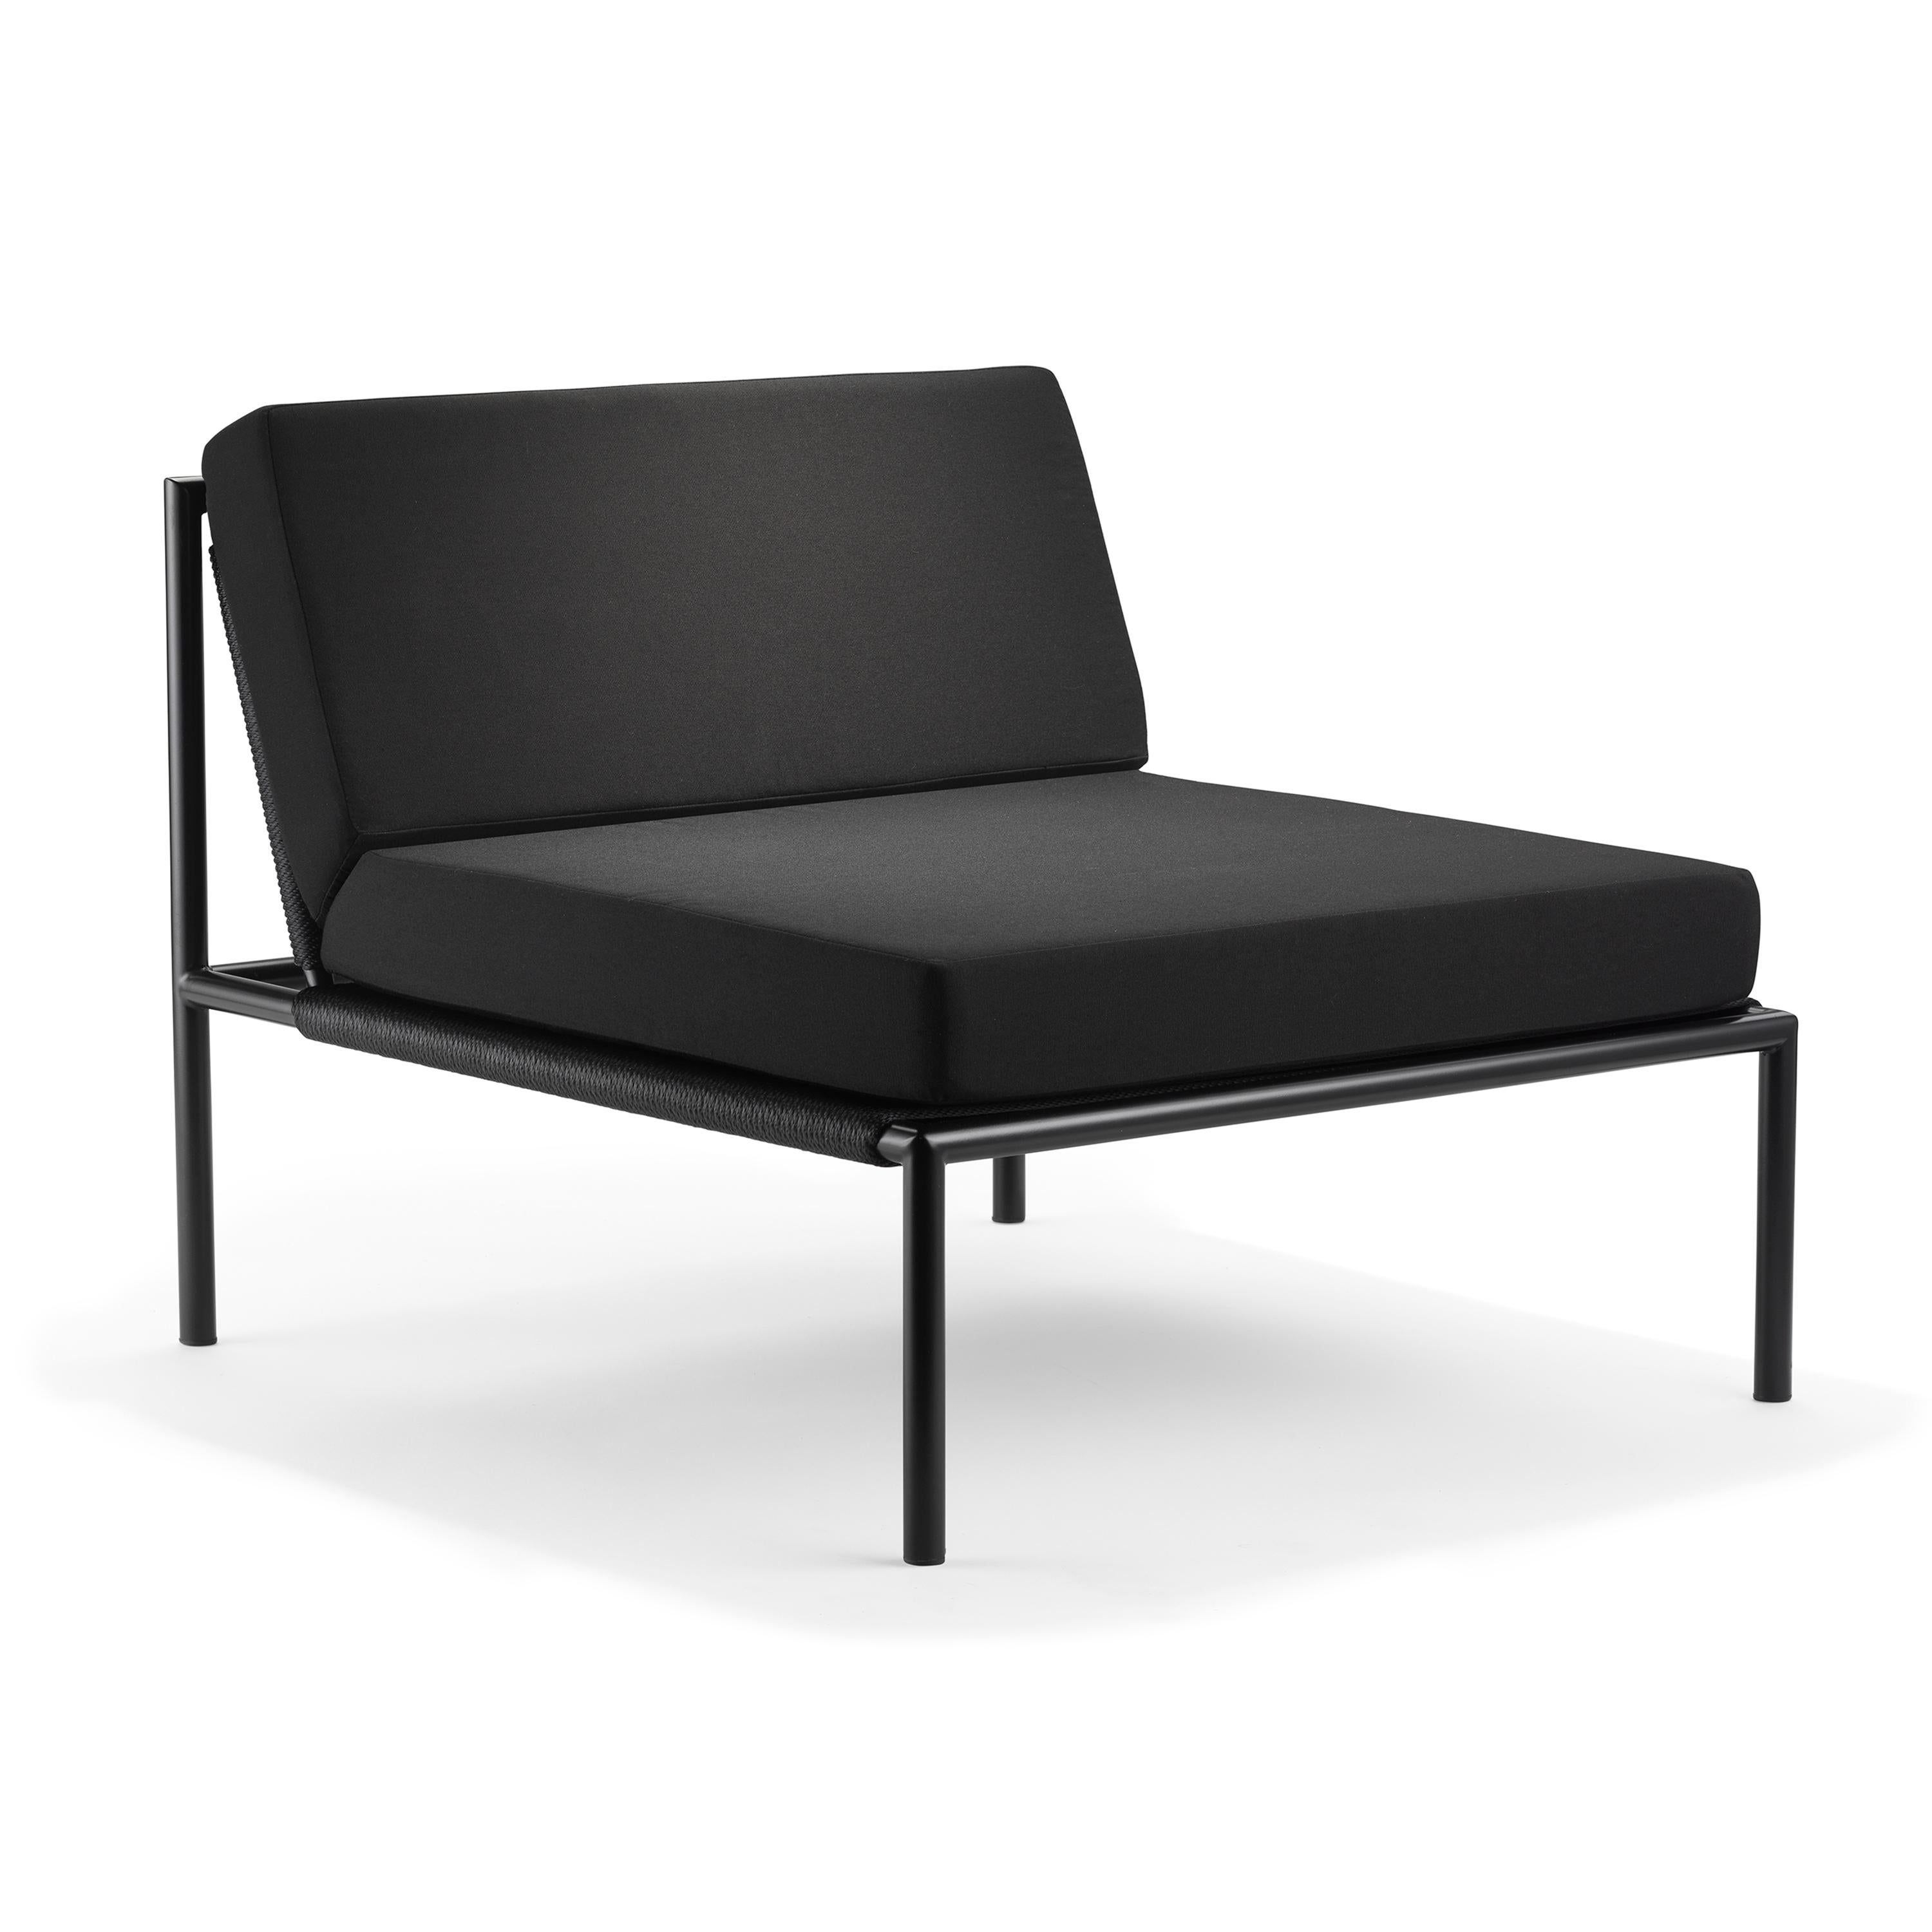 Chaise / sans bras de la série Ten10 1.2.3 en acier inoxydable revêtu de poudre noire semi-brillante, cordon en nylon noir ou blanc, et coussins d'assise et de dossier de 4